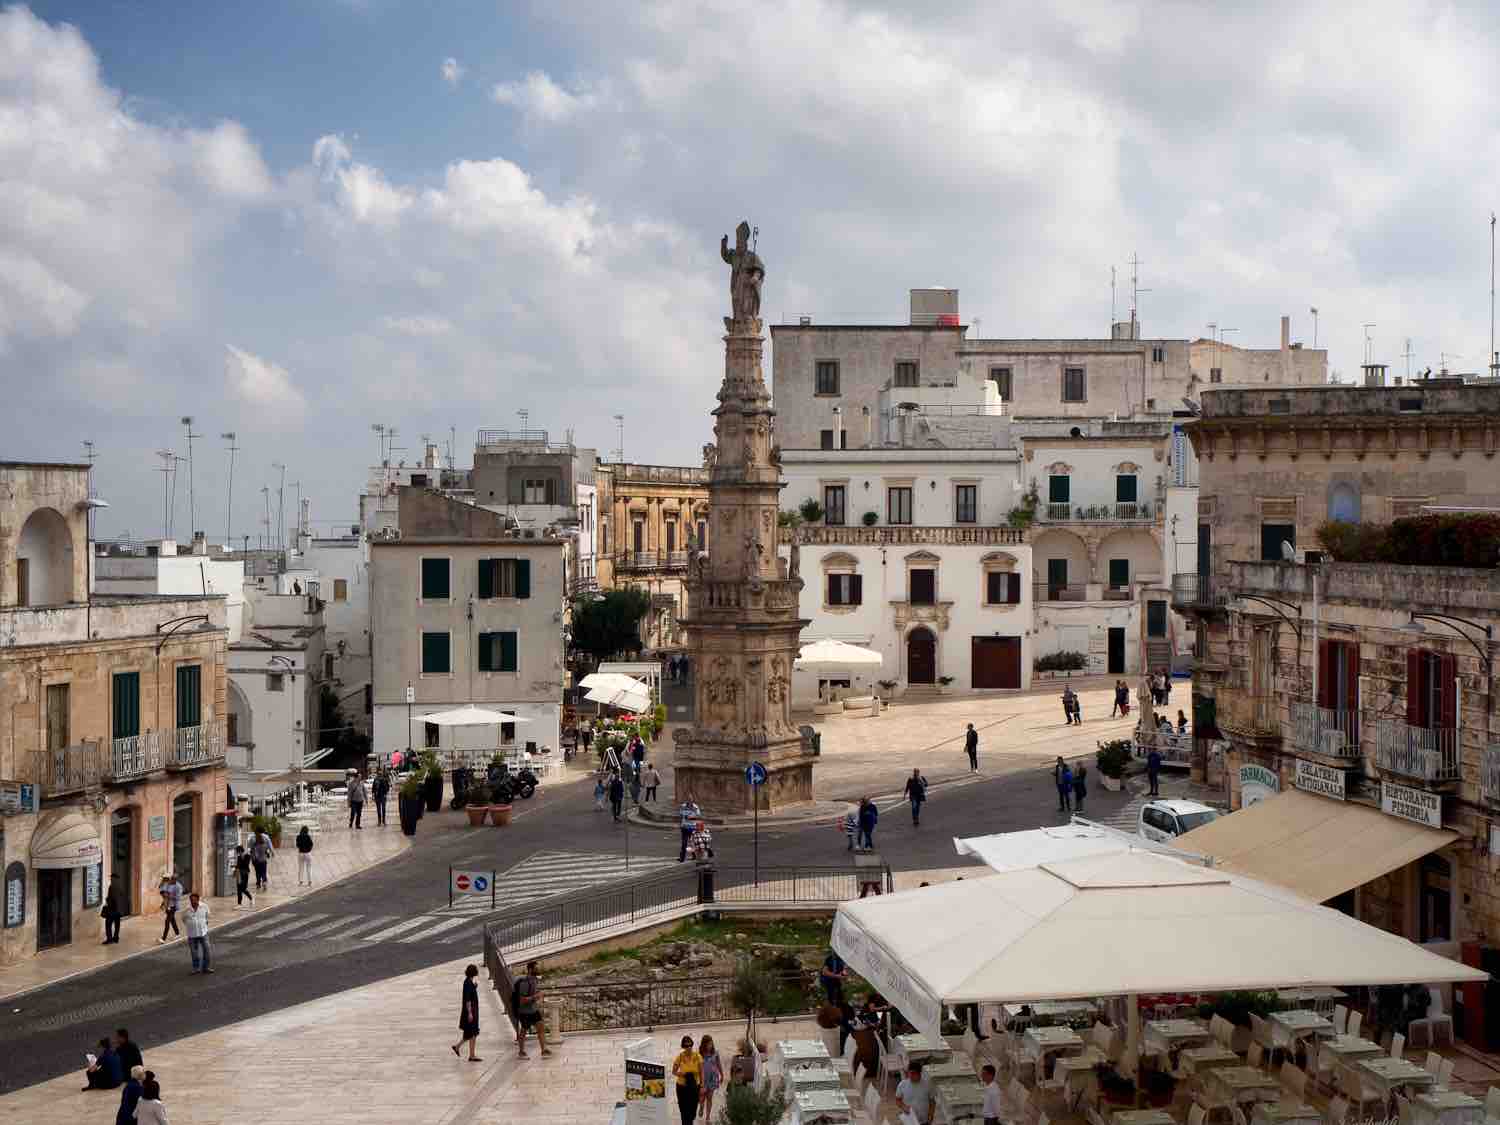 Piazza della libertà - Obelisk of Sant'Oronzo